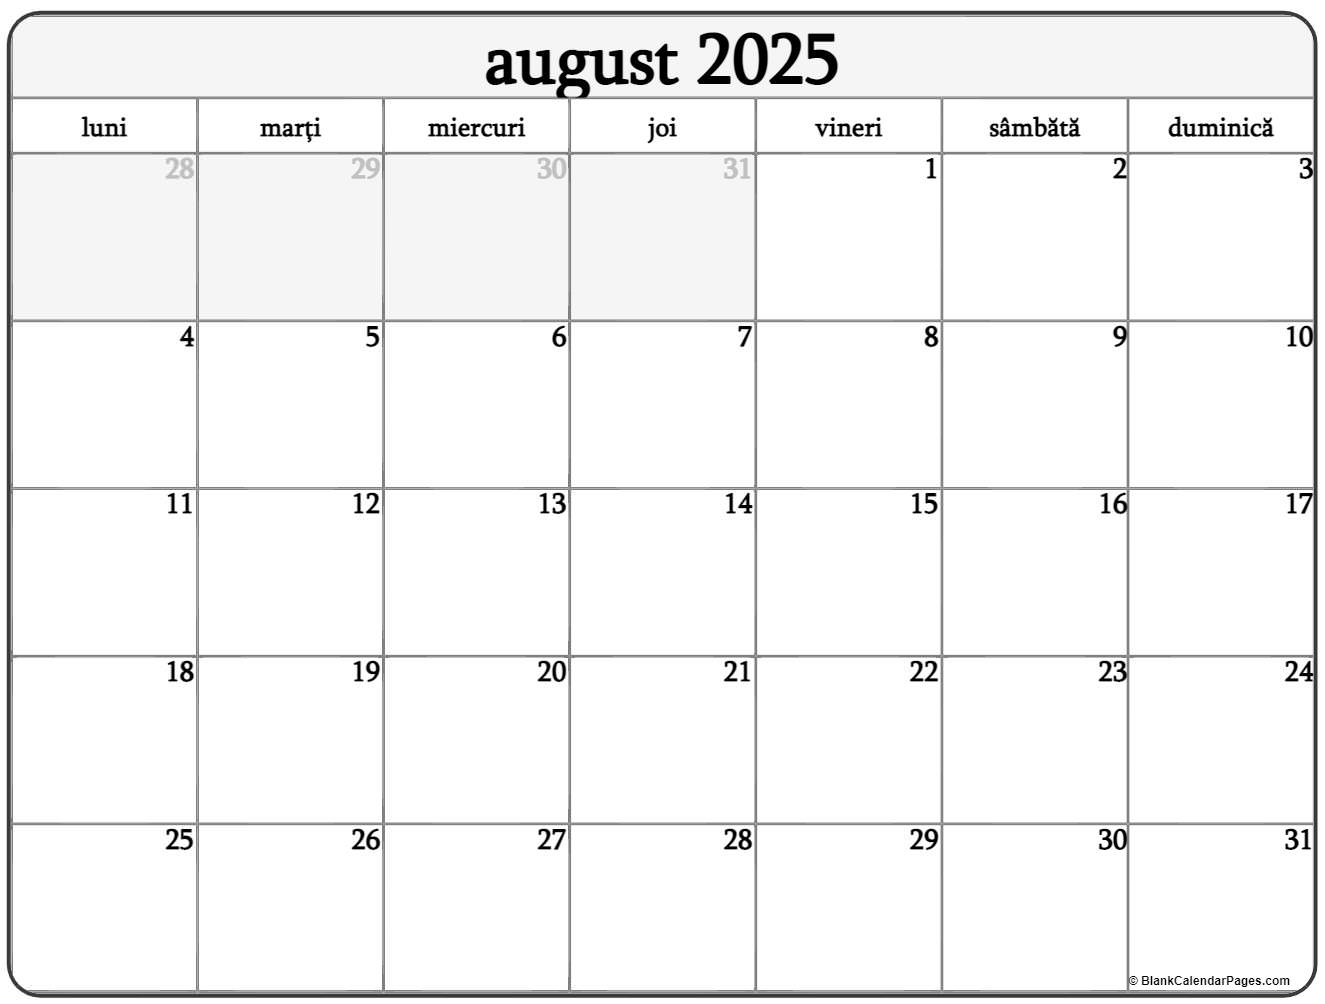 Calendarul august 2025 imprimabil gratuit in romana